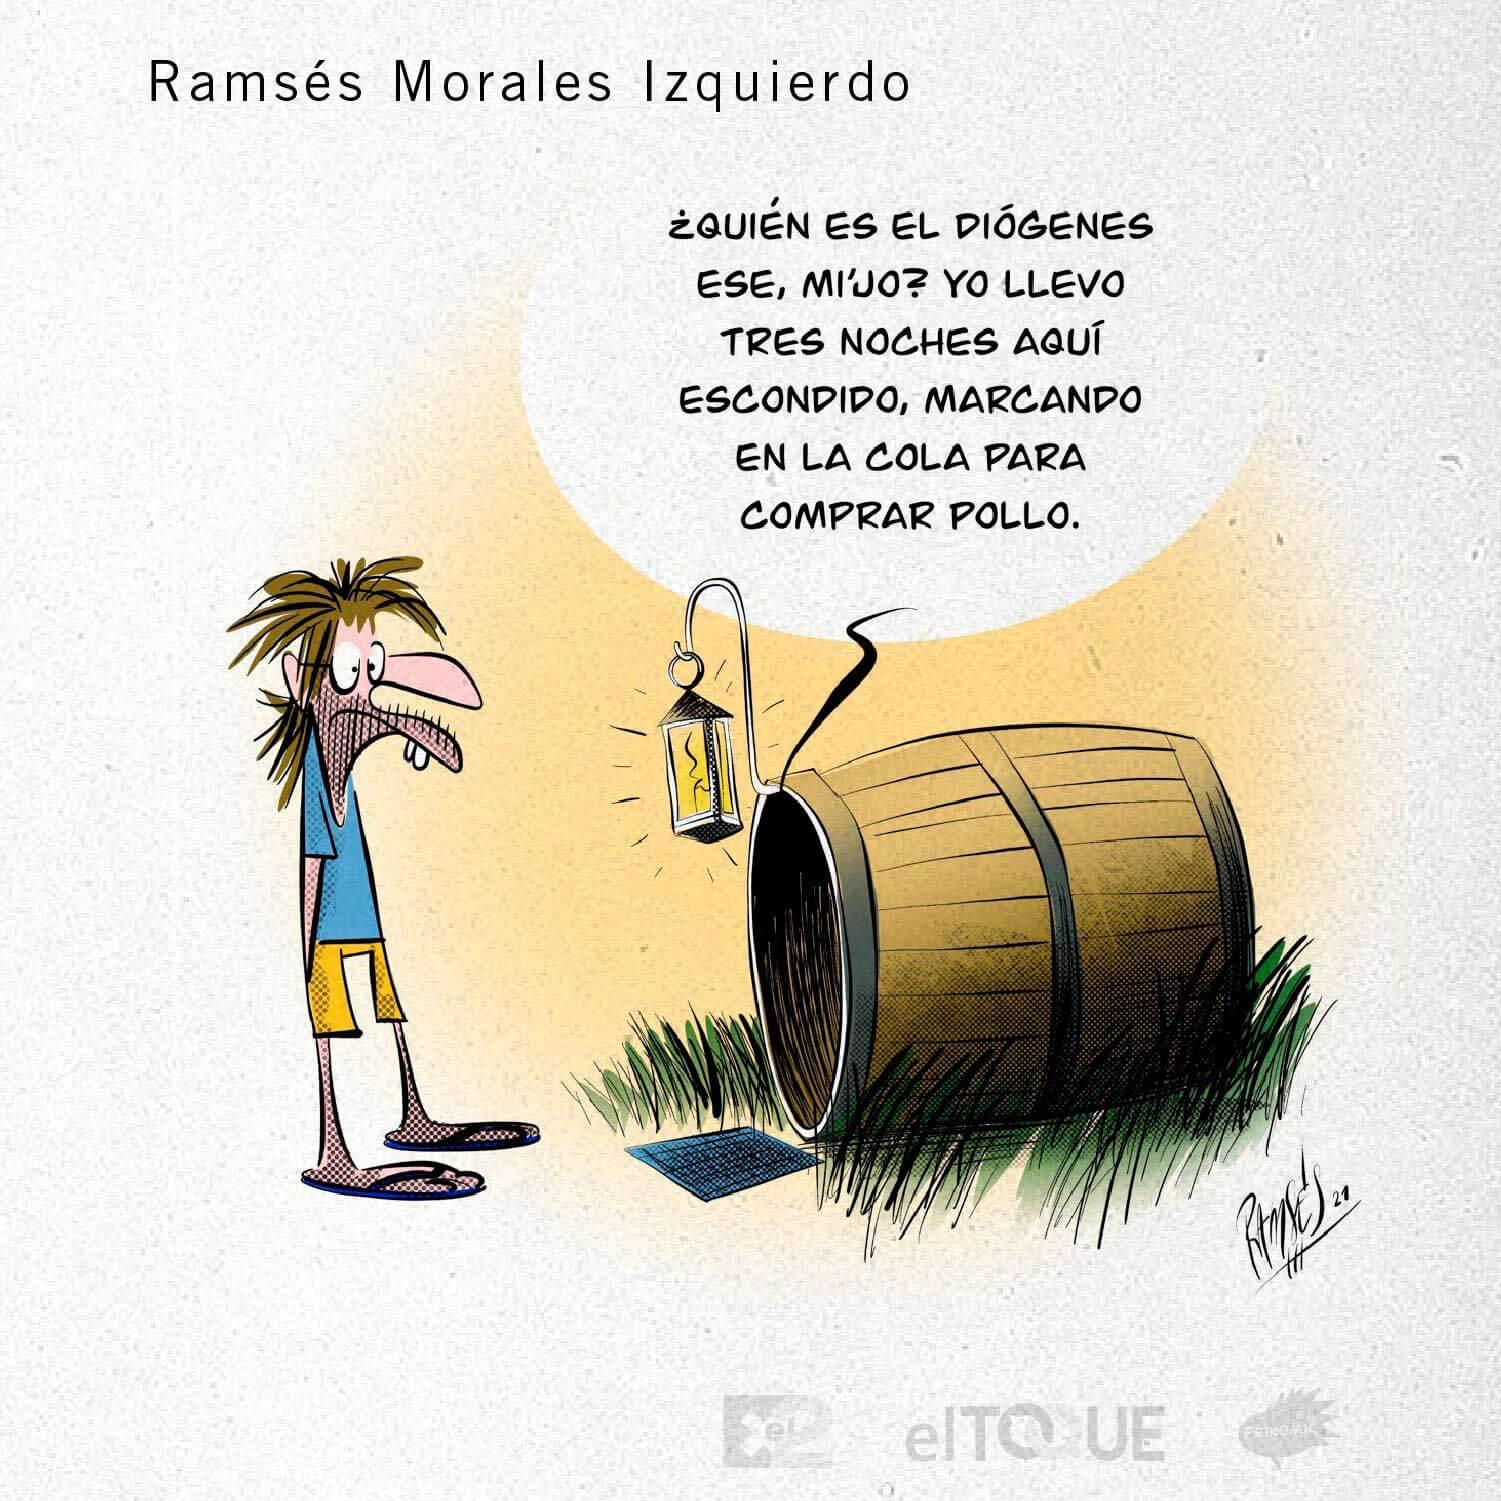 21-03-Morales-Ramses-POSTALES-NUEVA-NORMALIDAD-CUBA-ECONOMIA-ESCASEZ.jpg